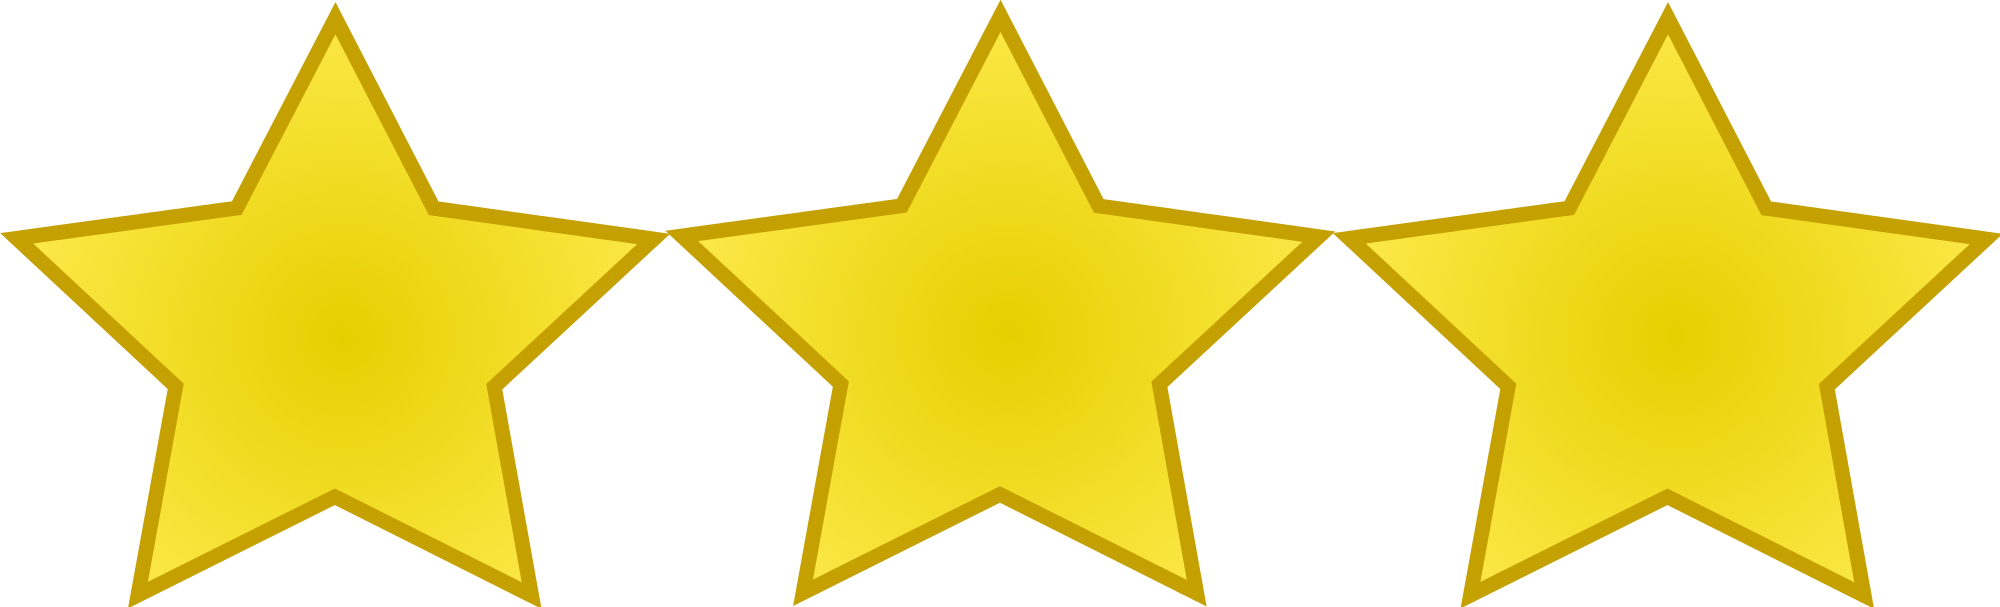 الذهبي 3 نجوم صورة شفافة